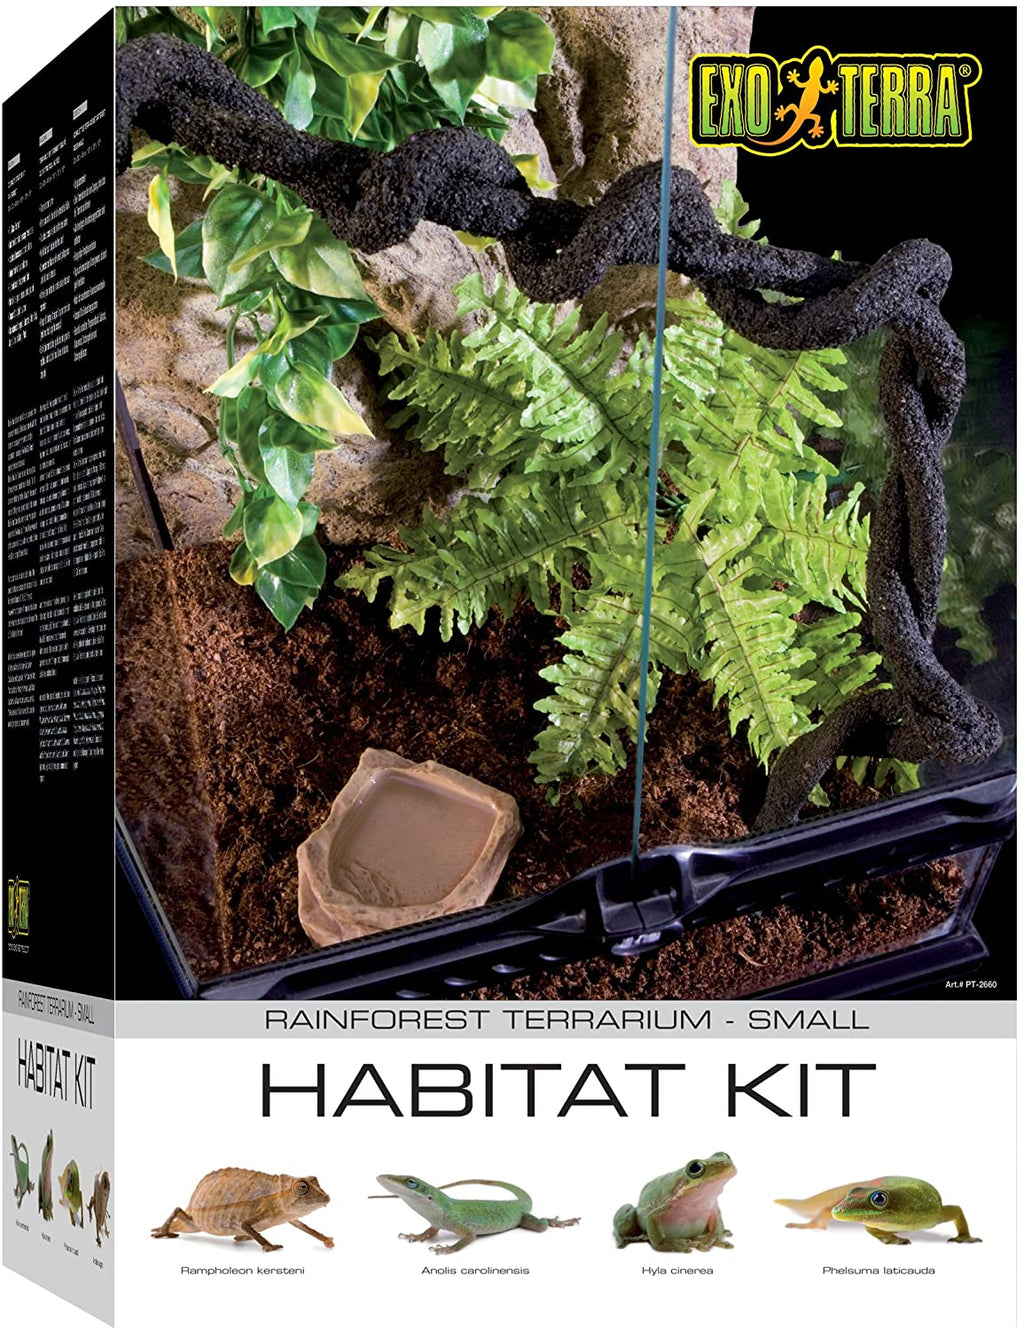 Exo Terra Rainforest Terrarium Habitat Starter Kit - Small  